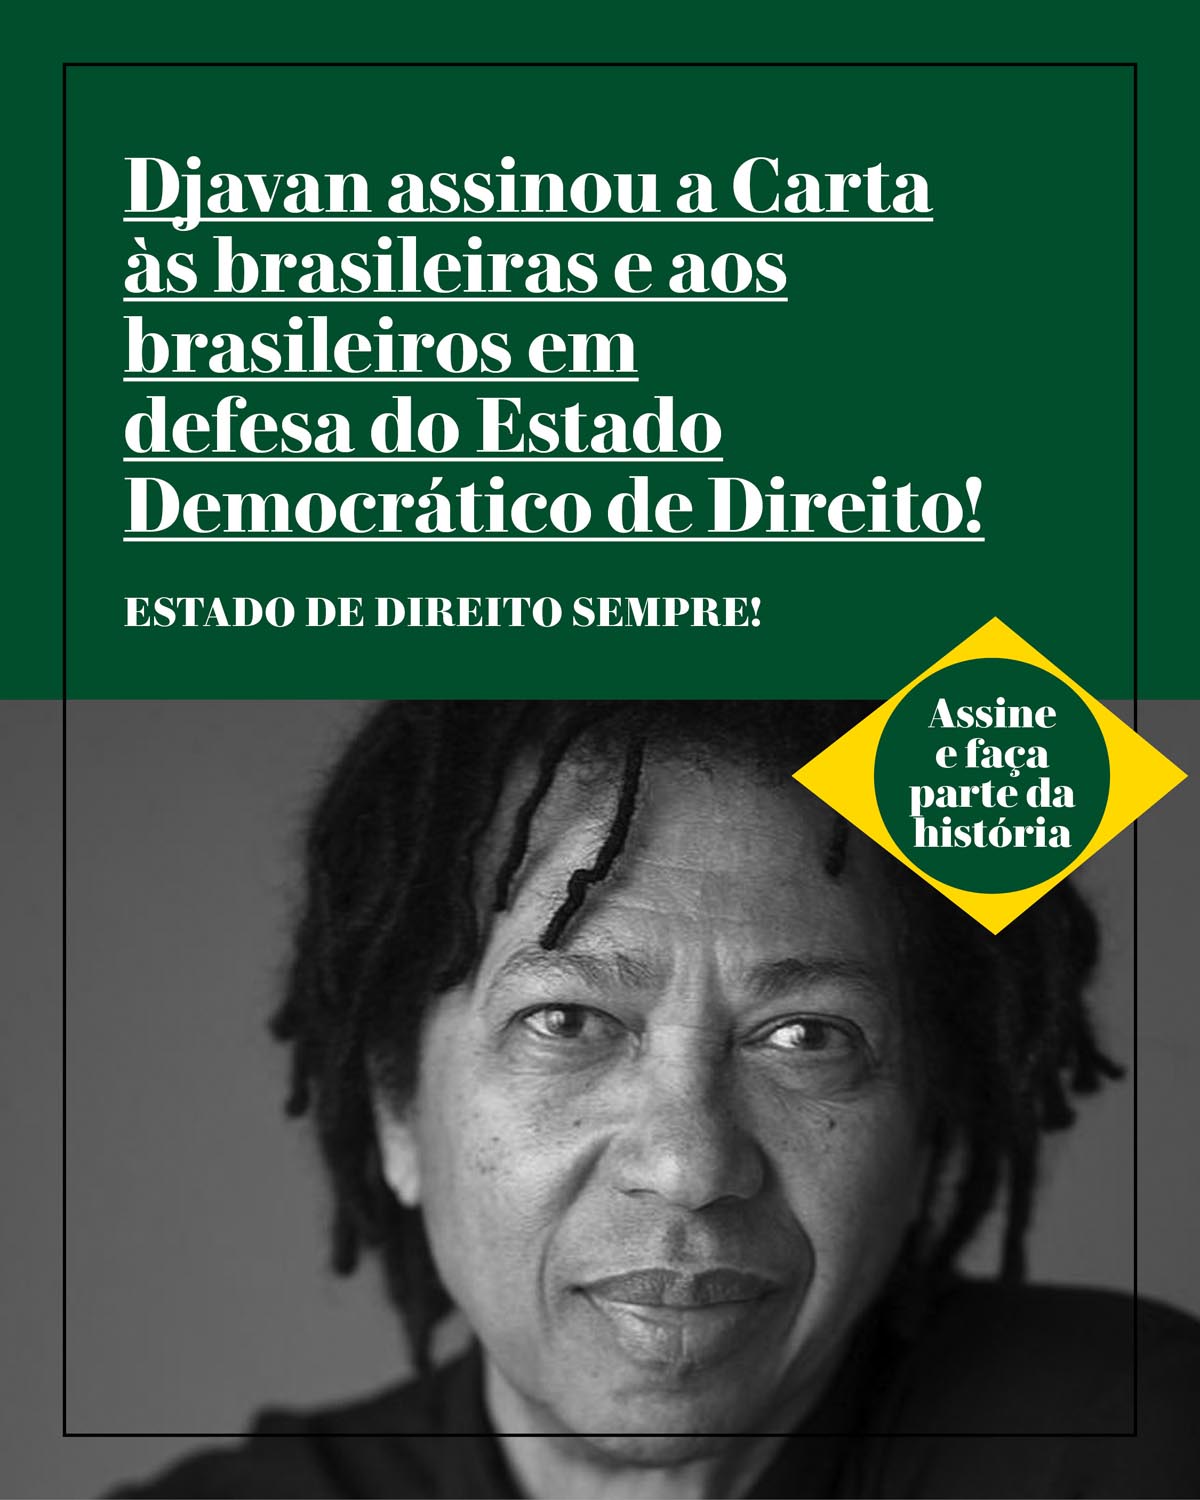 Djavan assinou a Carta às brasileiras e aos brasileiros em defesa do Estado Democrático de Direito!